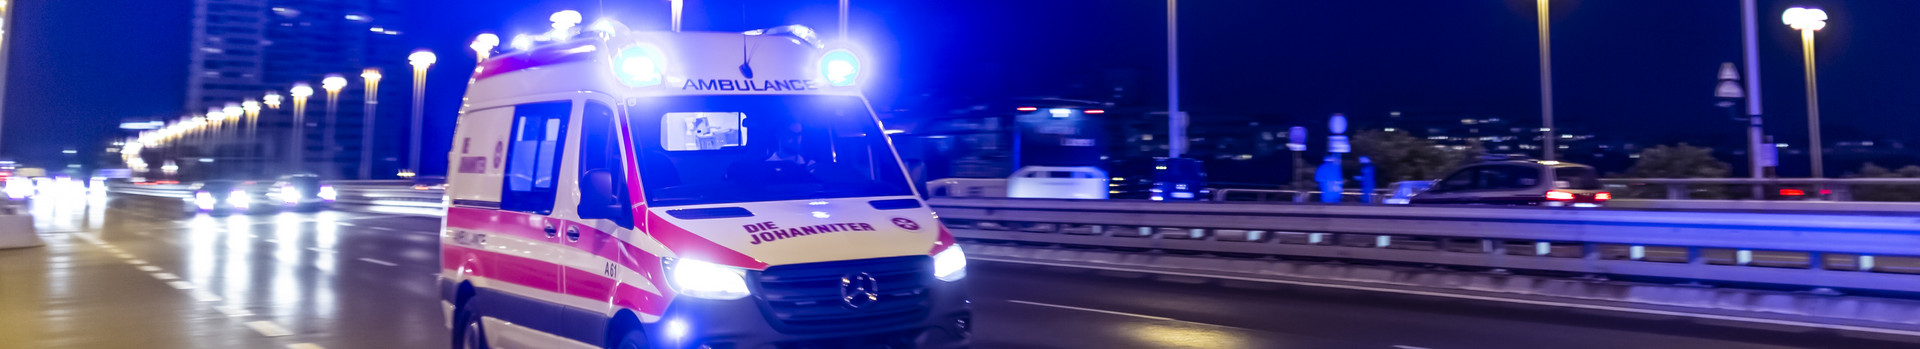 Ein Krankenwagen im Einsatz in der Nacht